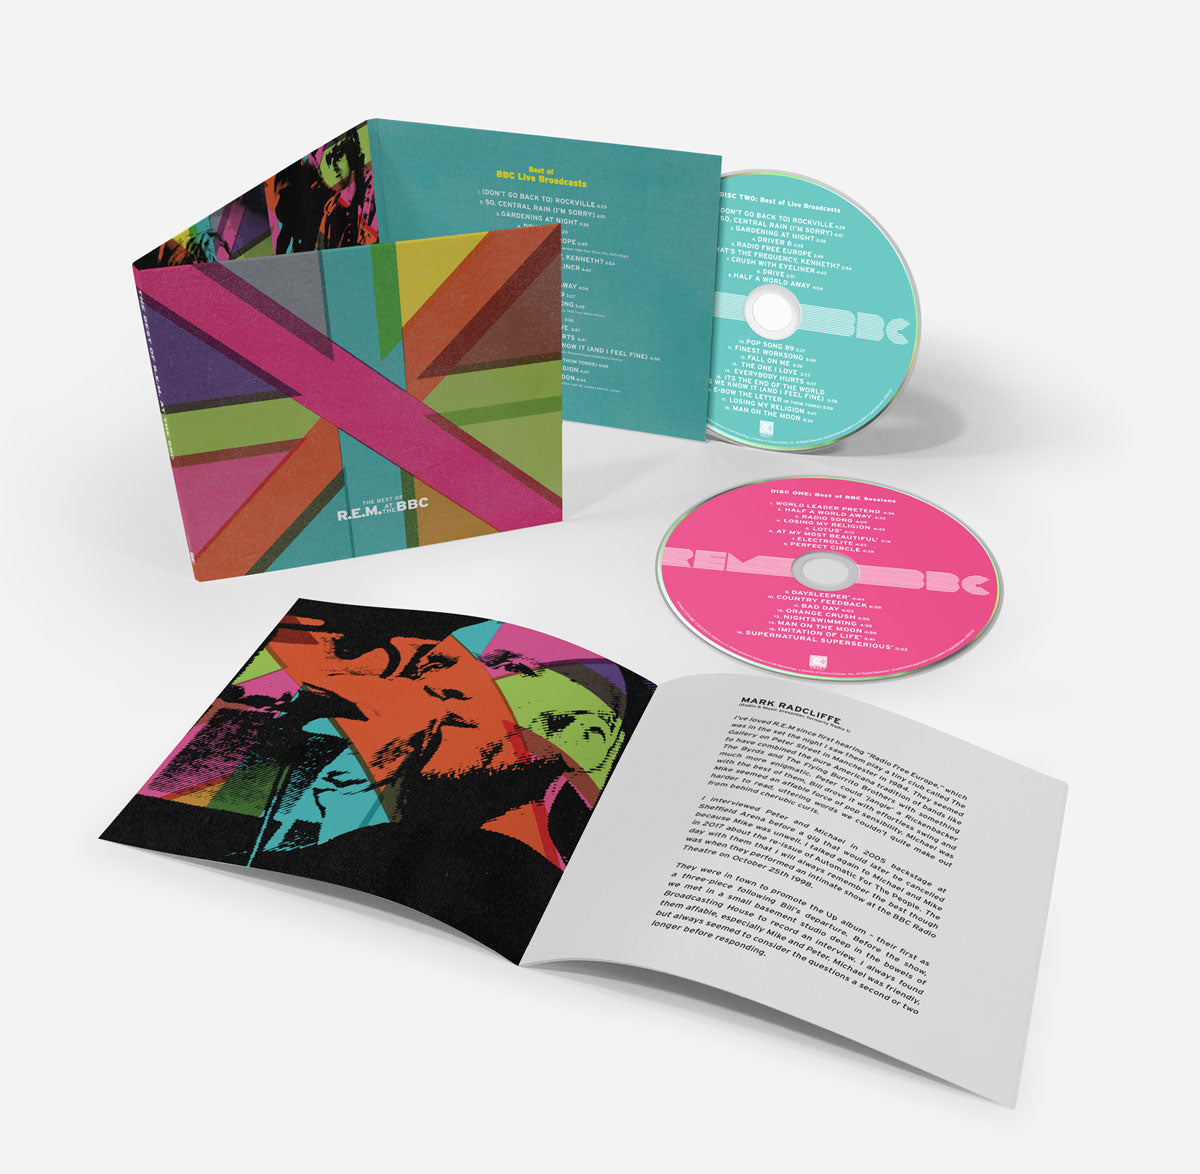 R.E.M. – The Best of R.E.M. at the BBC (2-CD) – Craft Recordings